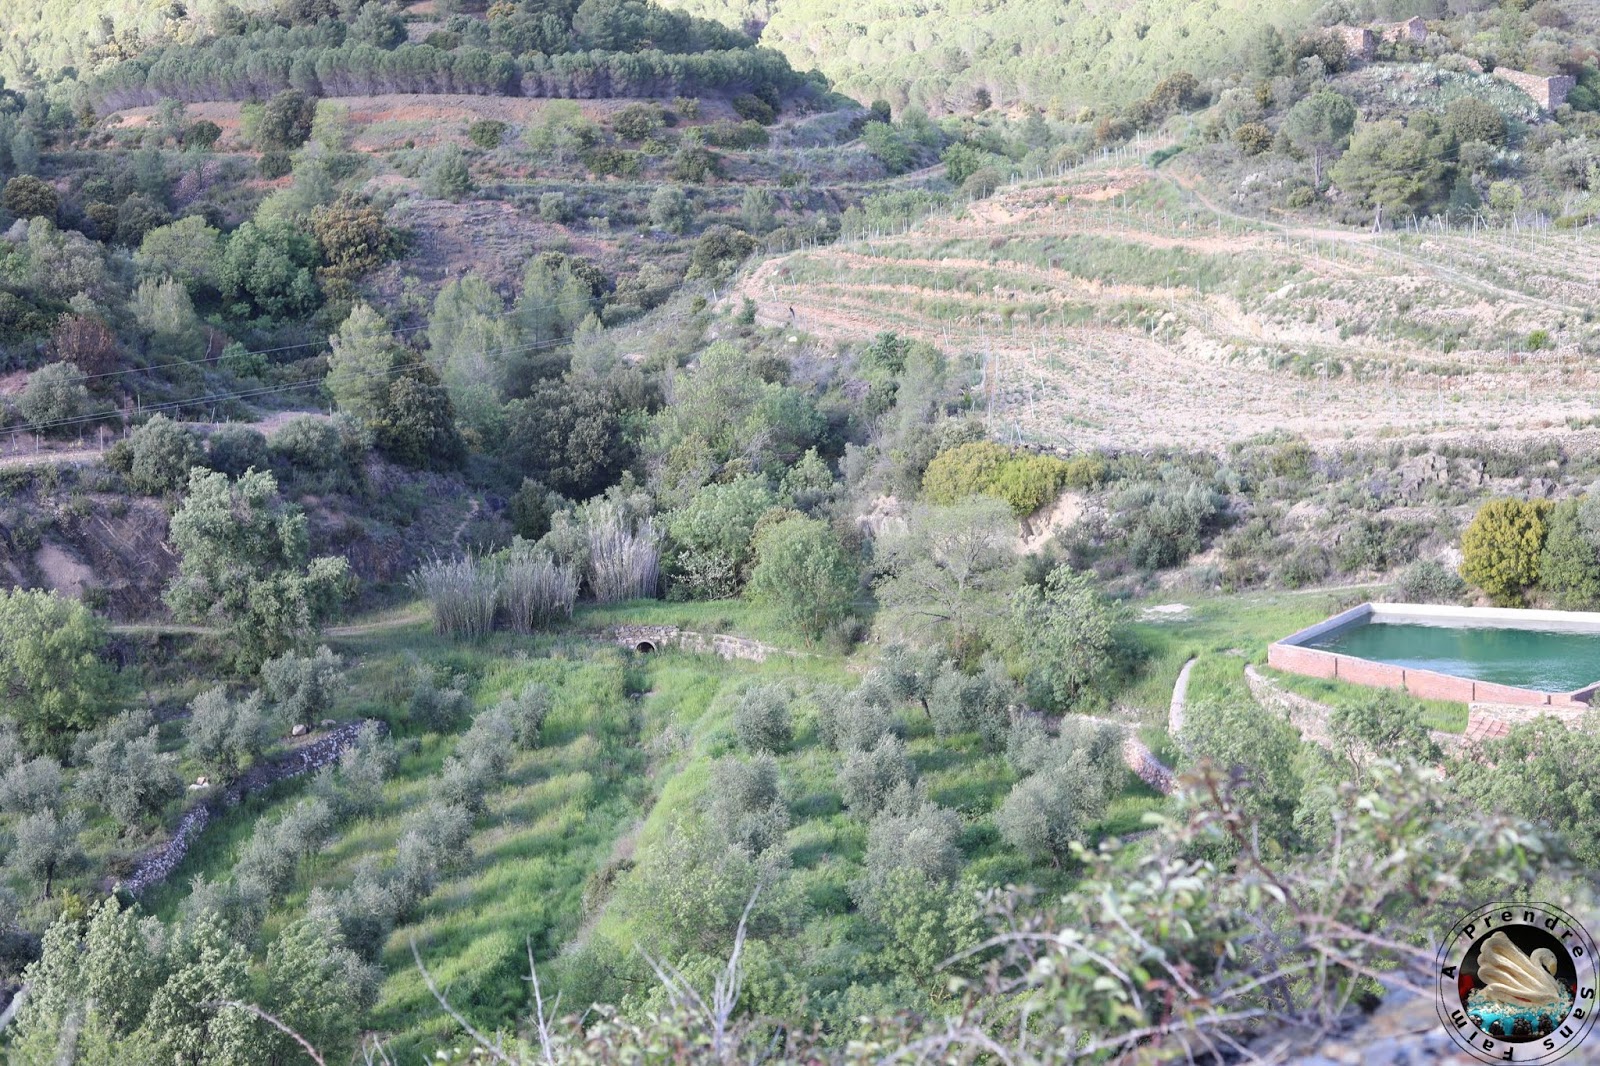 Le vignoble d'Alvaro Palacios : admirer les paysages à l'origine de son vin L'Ermita